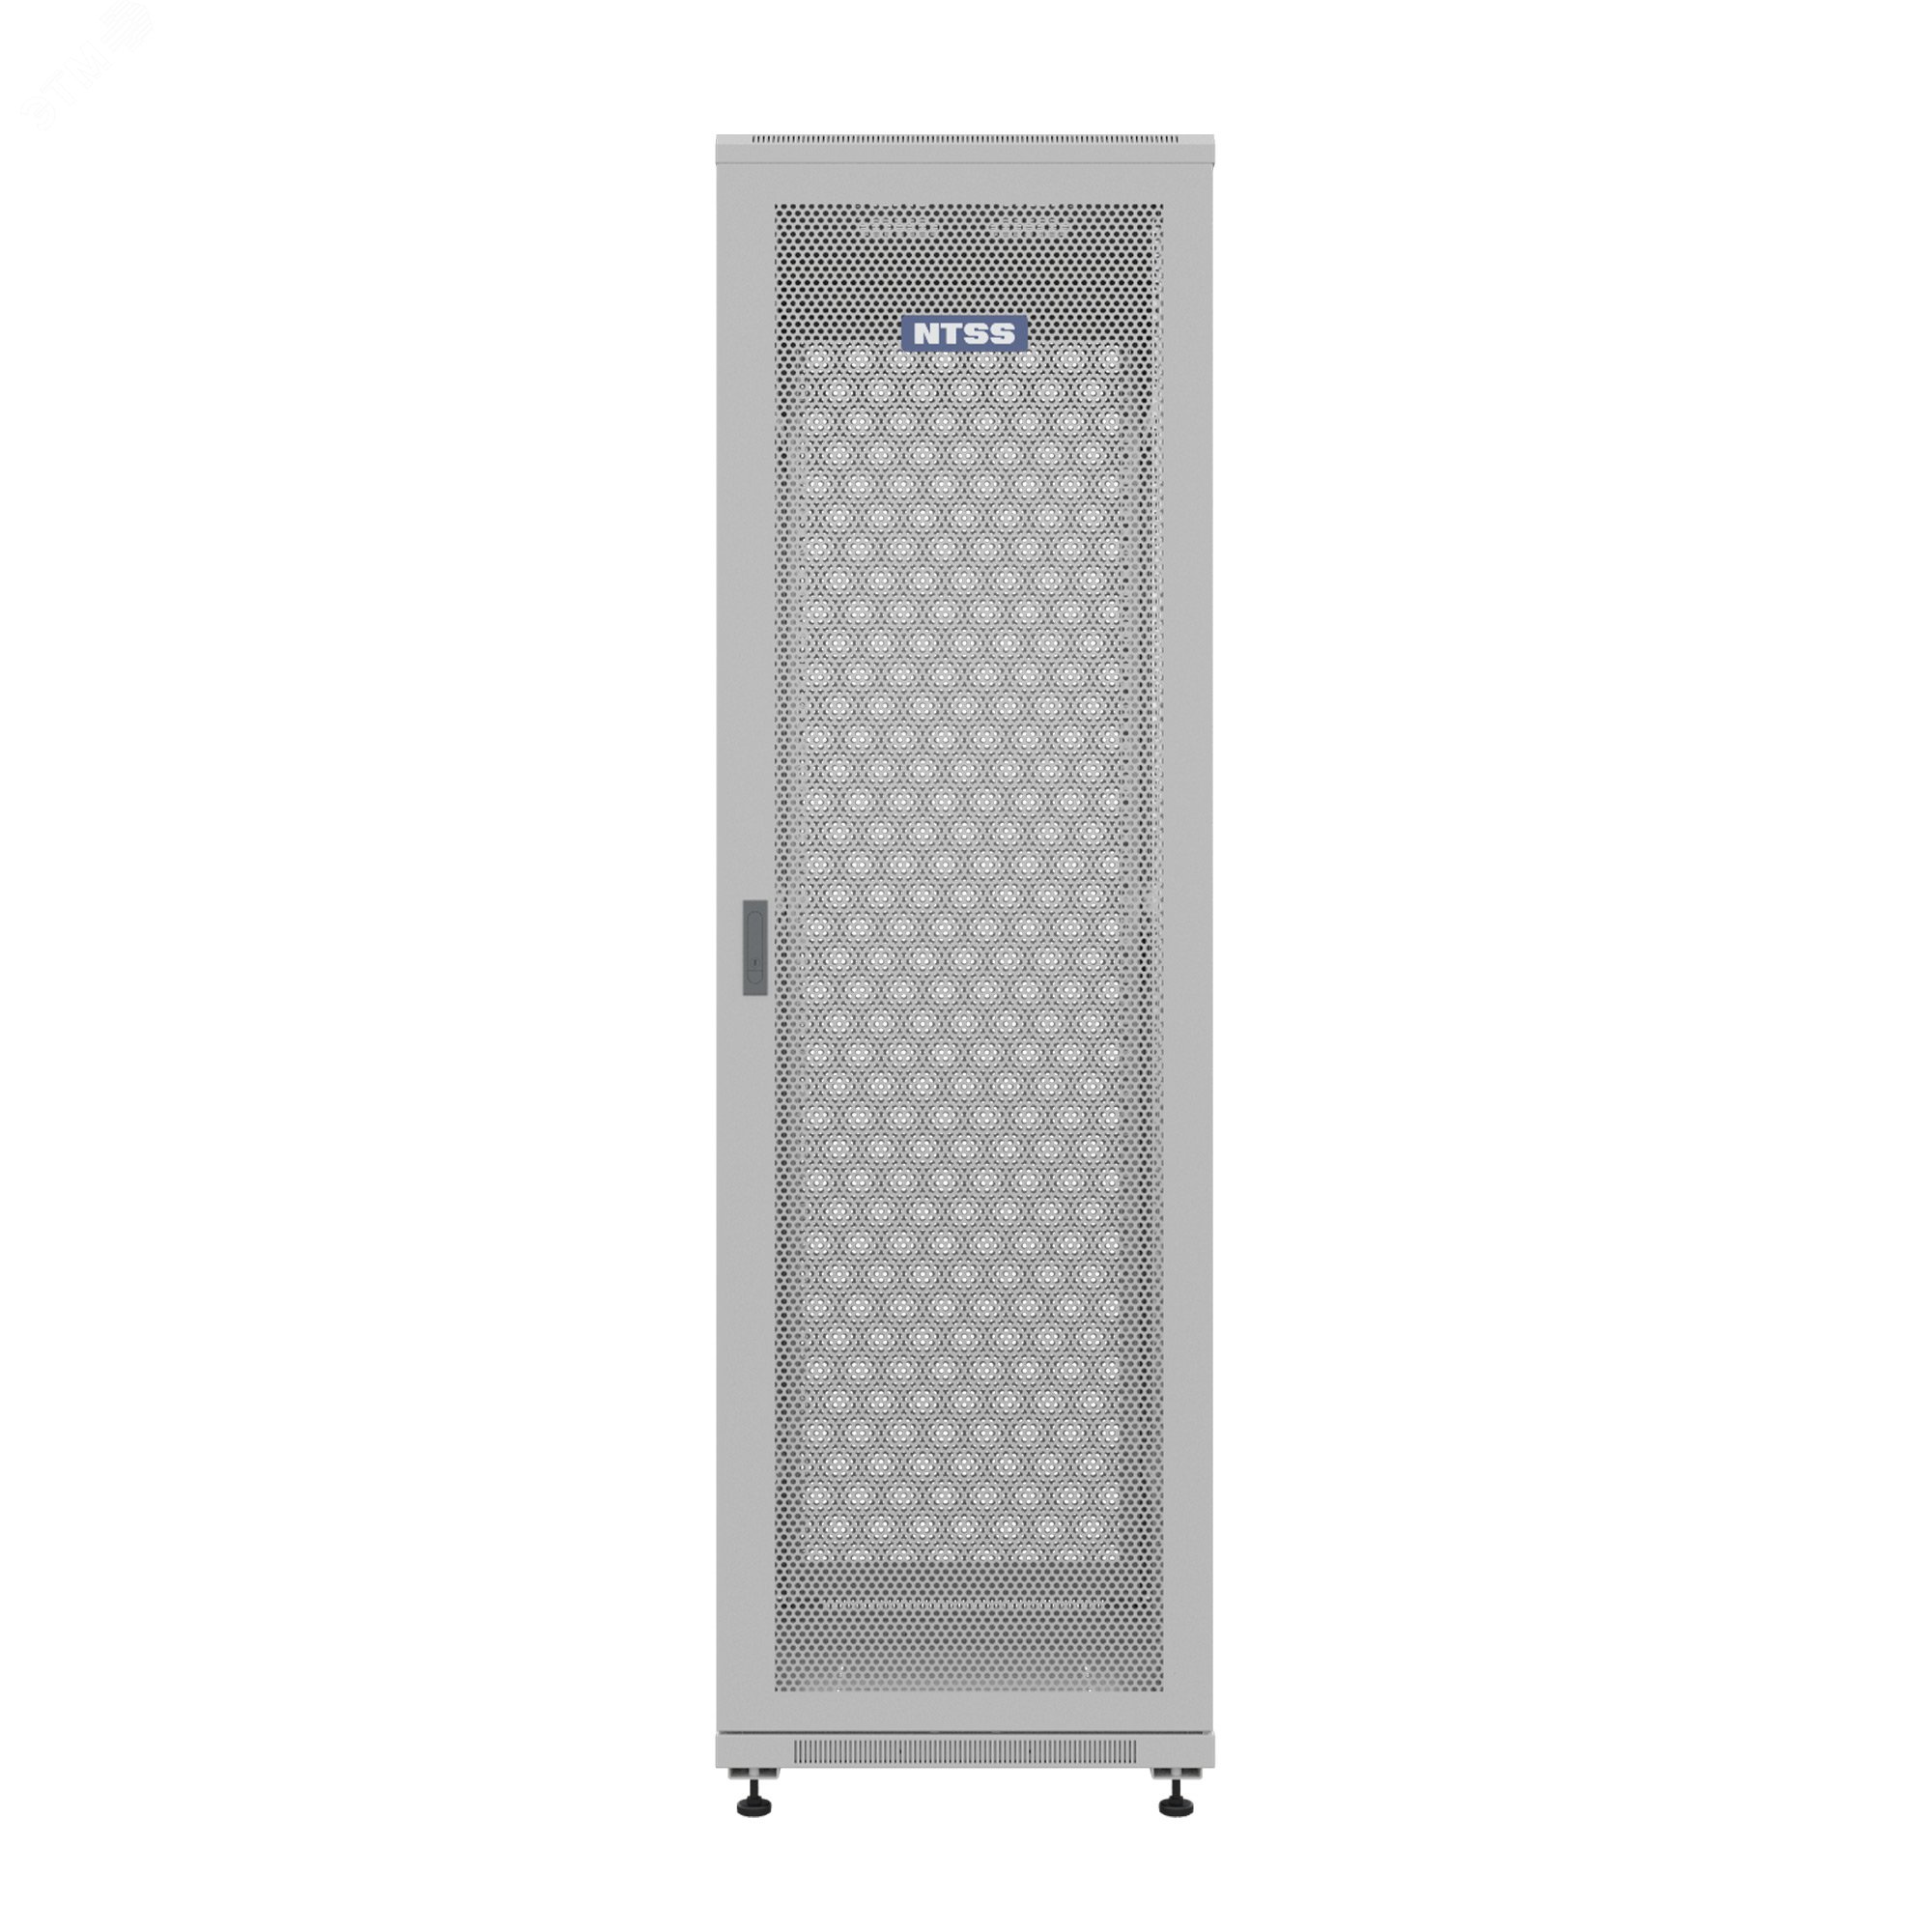 Шкаф напольный универсальный серверный R 18U 600х800мм, 4 профиля 19, двери перфорированная и сплошная металл, боковые стенки съемные, регулируемые опоры, разобранный, серый RAL 7035 NTSS-R18U6080PD NTSS - превью 3